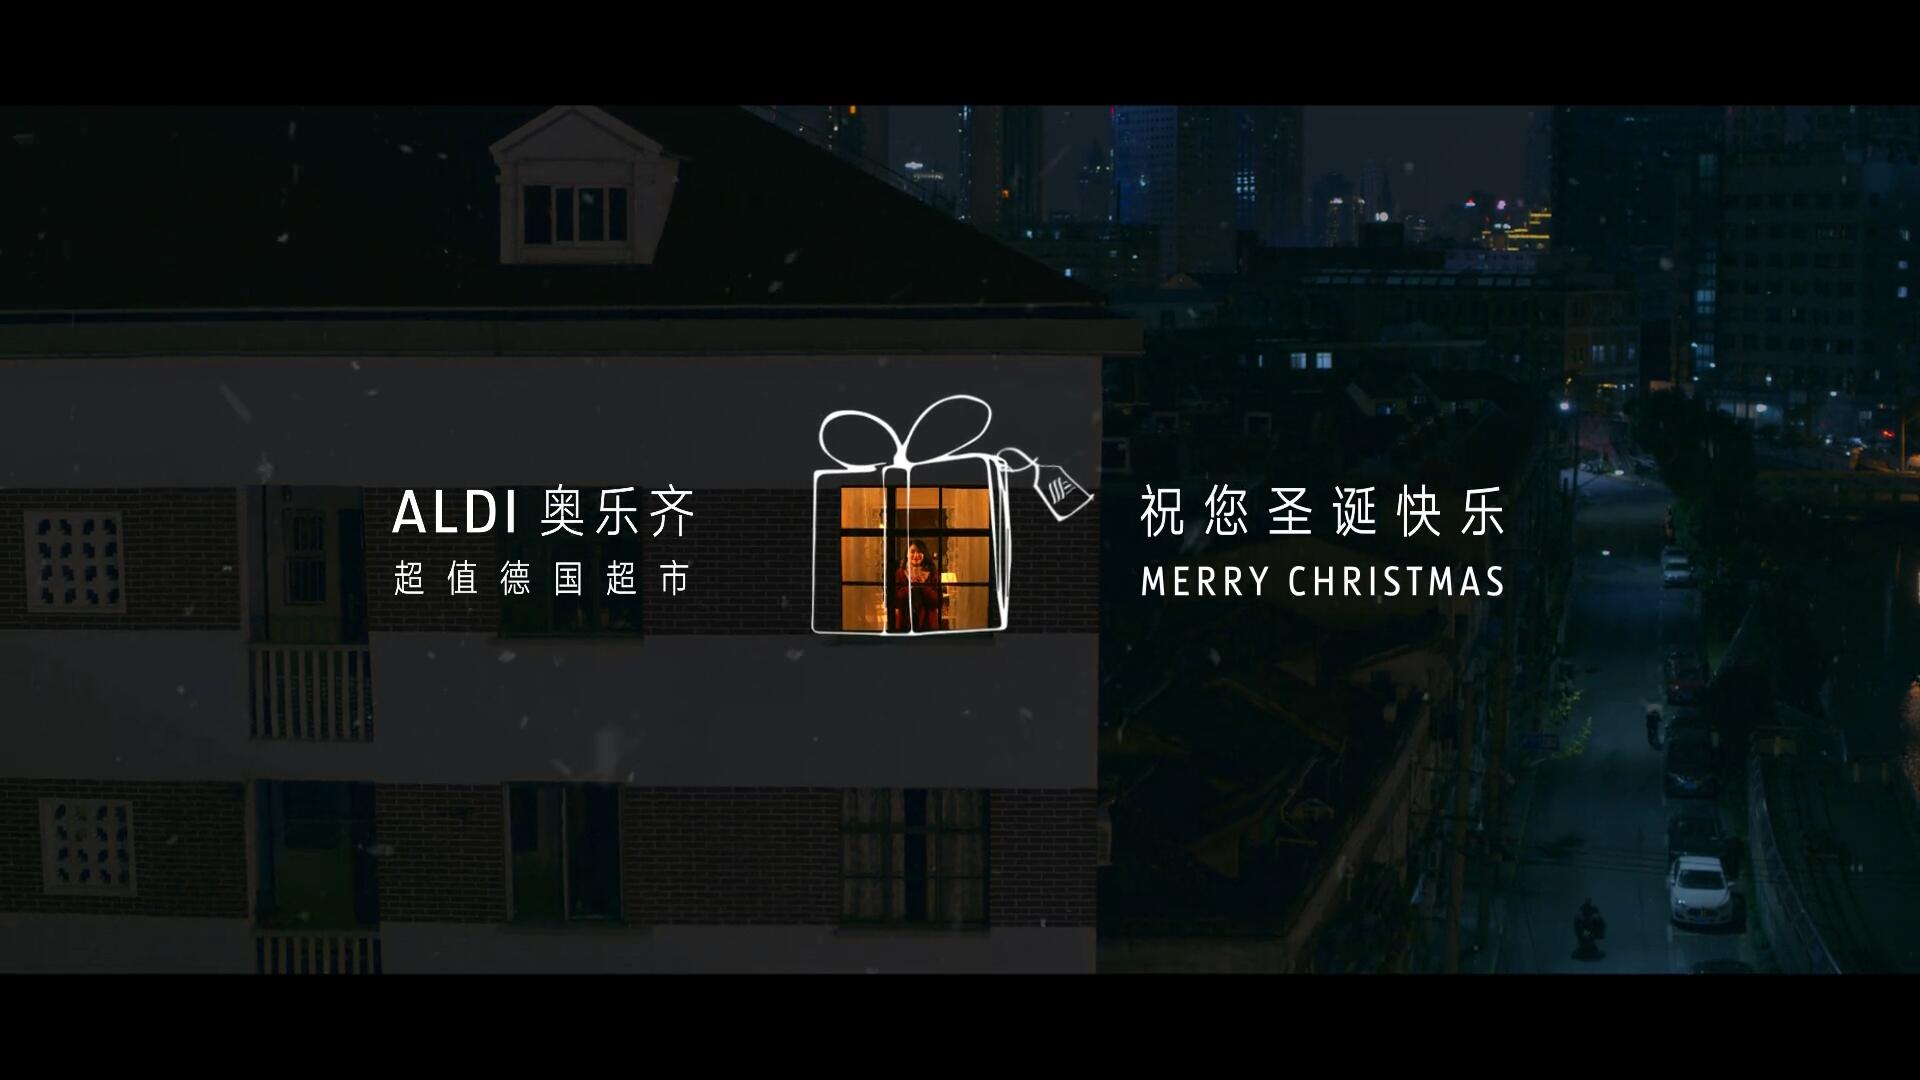 ALDI 奥乐齐的圣诞广告：我的生活，是给自己的礼物